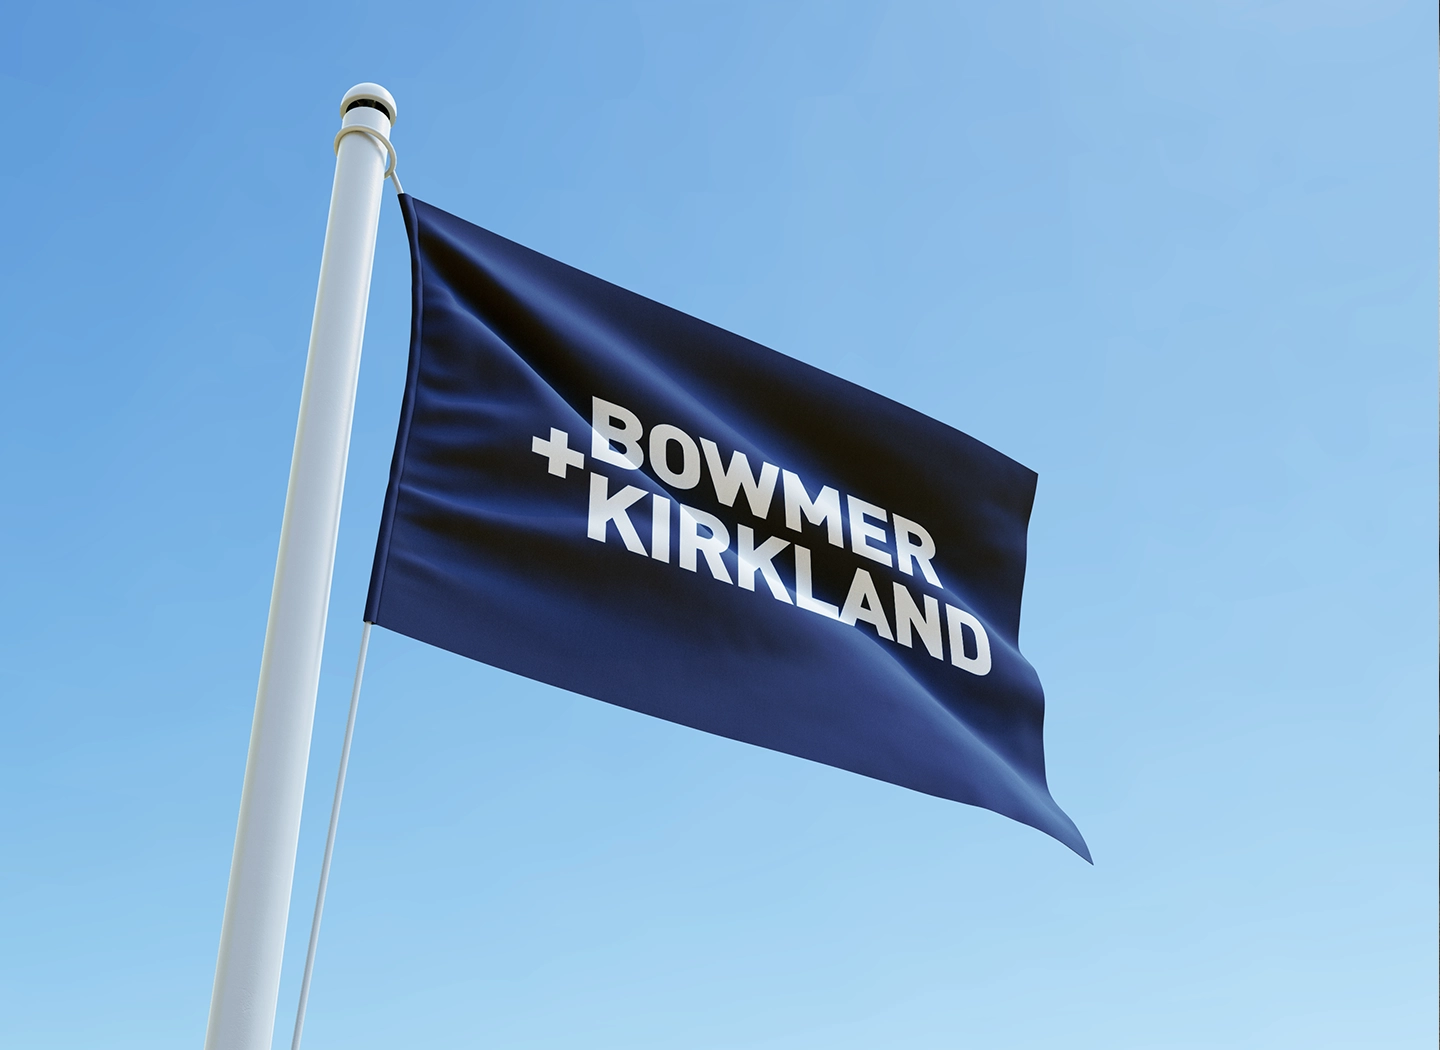 Image of Bowmer and Kirkland flag